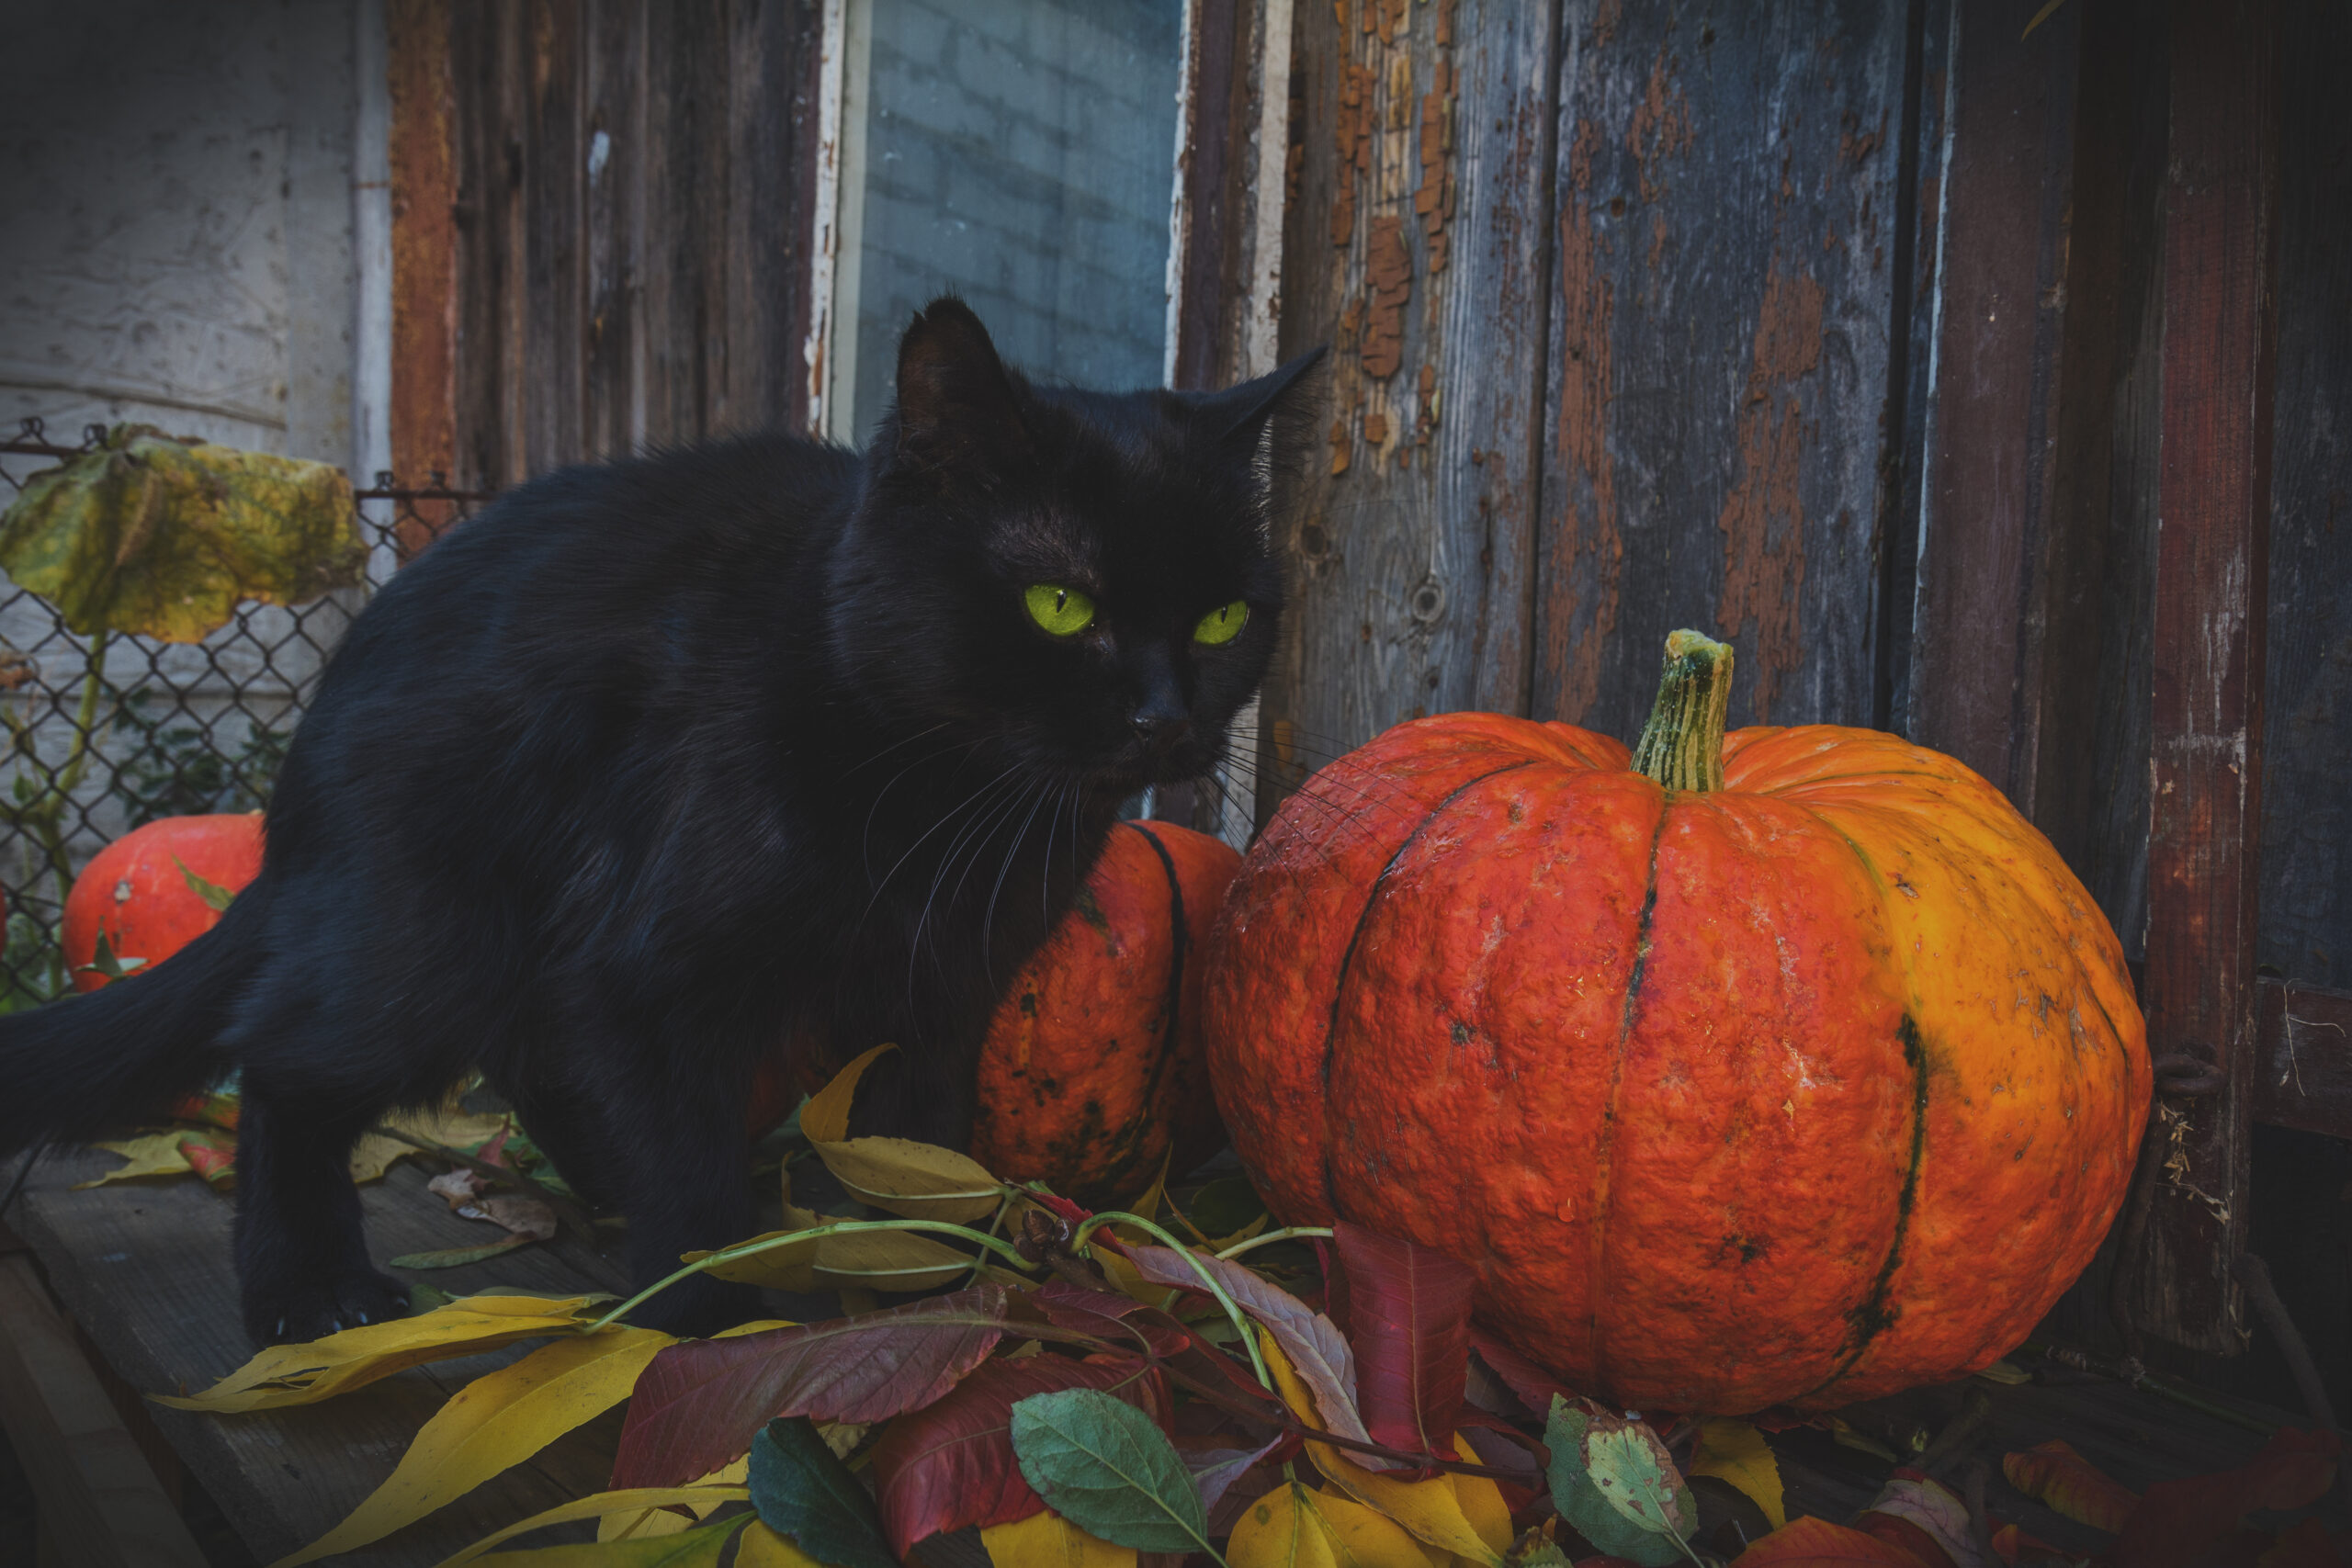 Black Cat and pumpkins